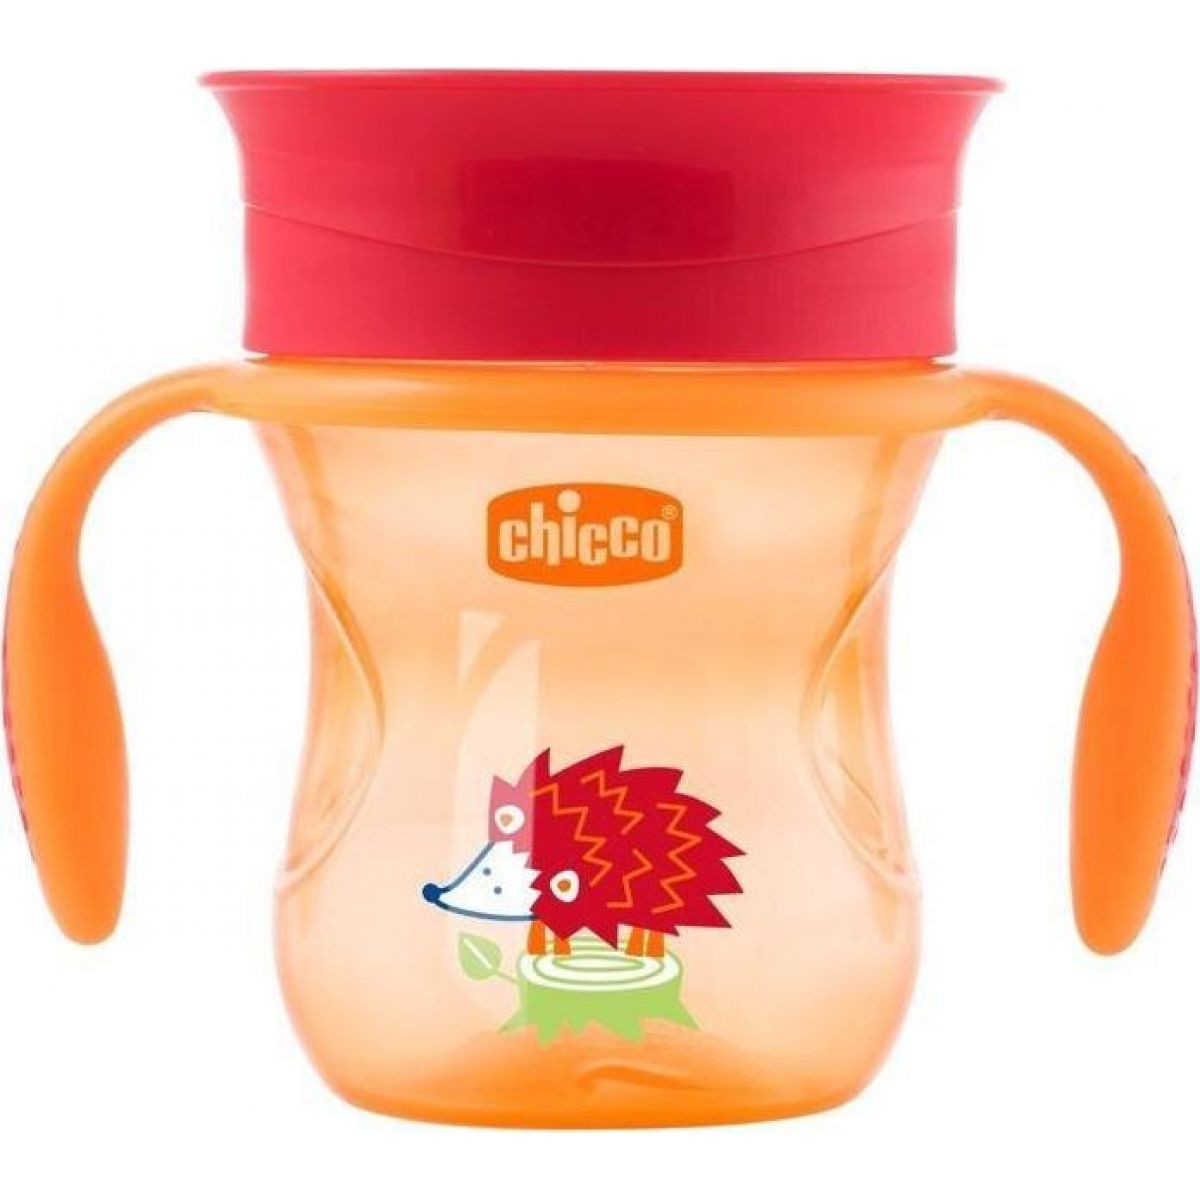 Chicco Hrneček Perfect 360 s držadly 200 ml oranžový 12m+